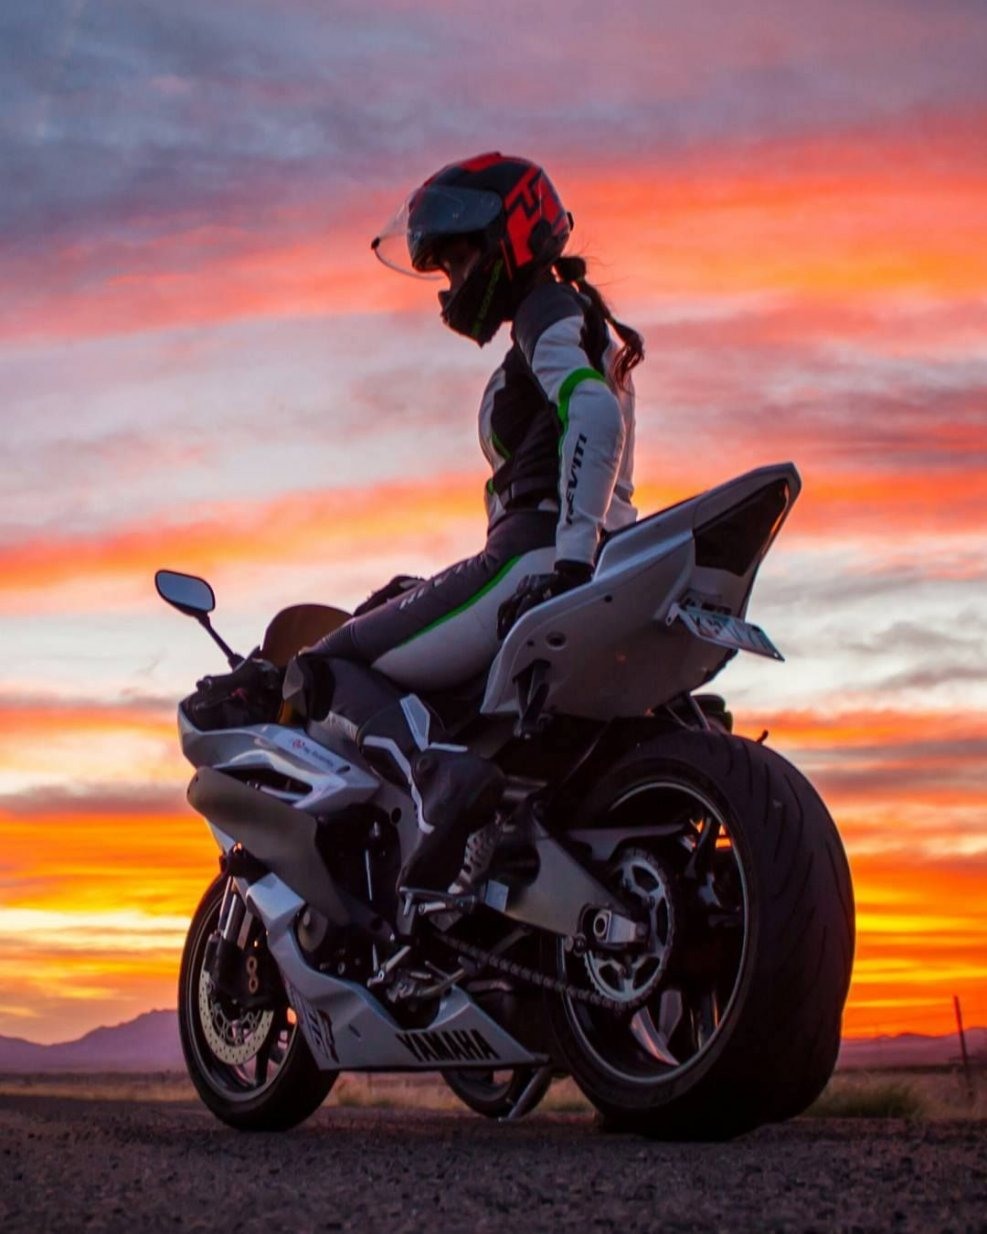 Мотоциклист одевает шлем рядом с мотоциклом — Авы и картинки